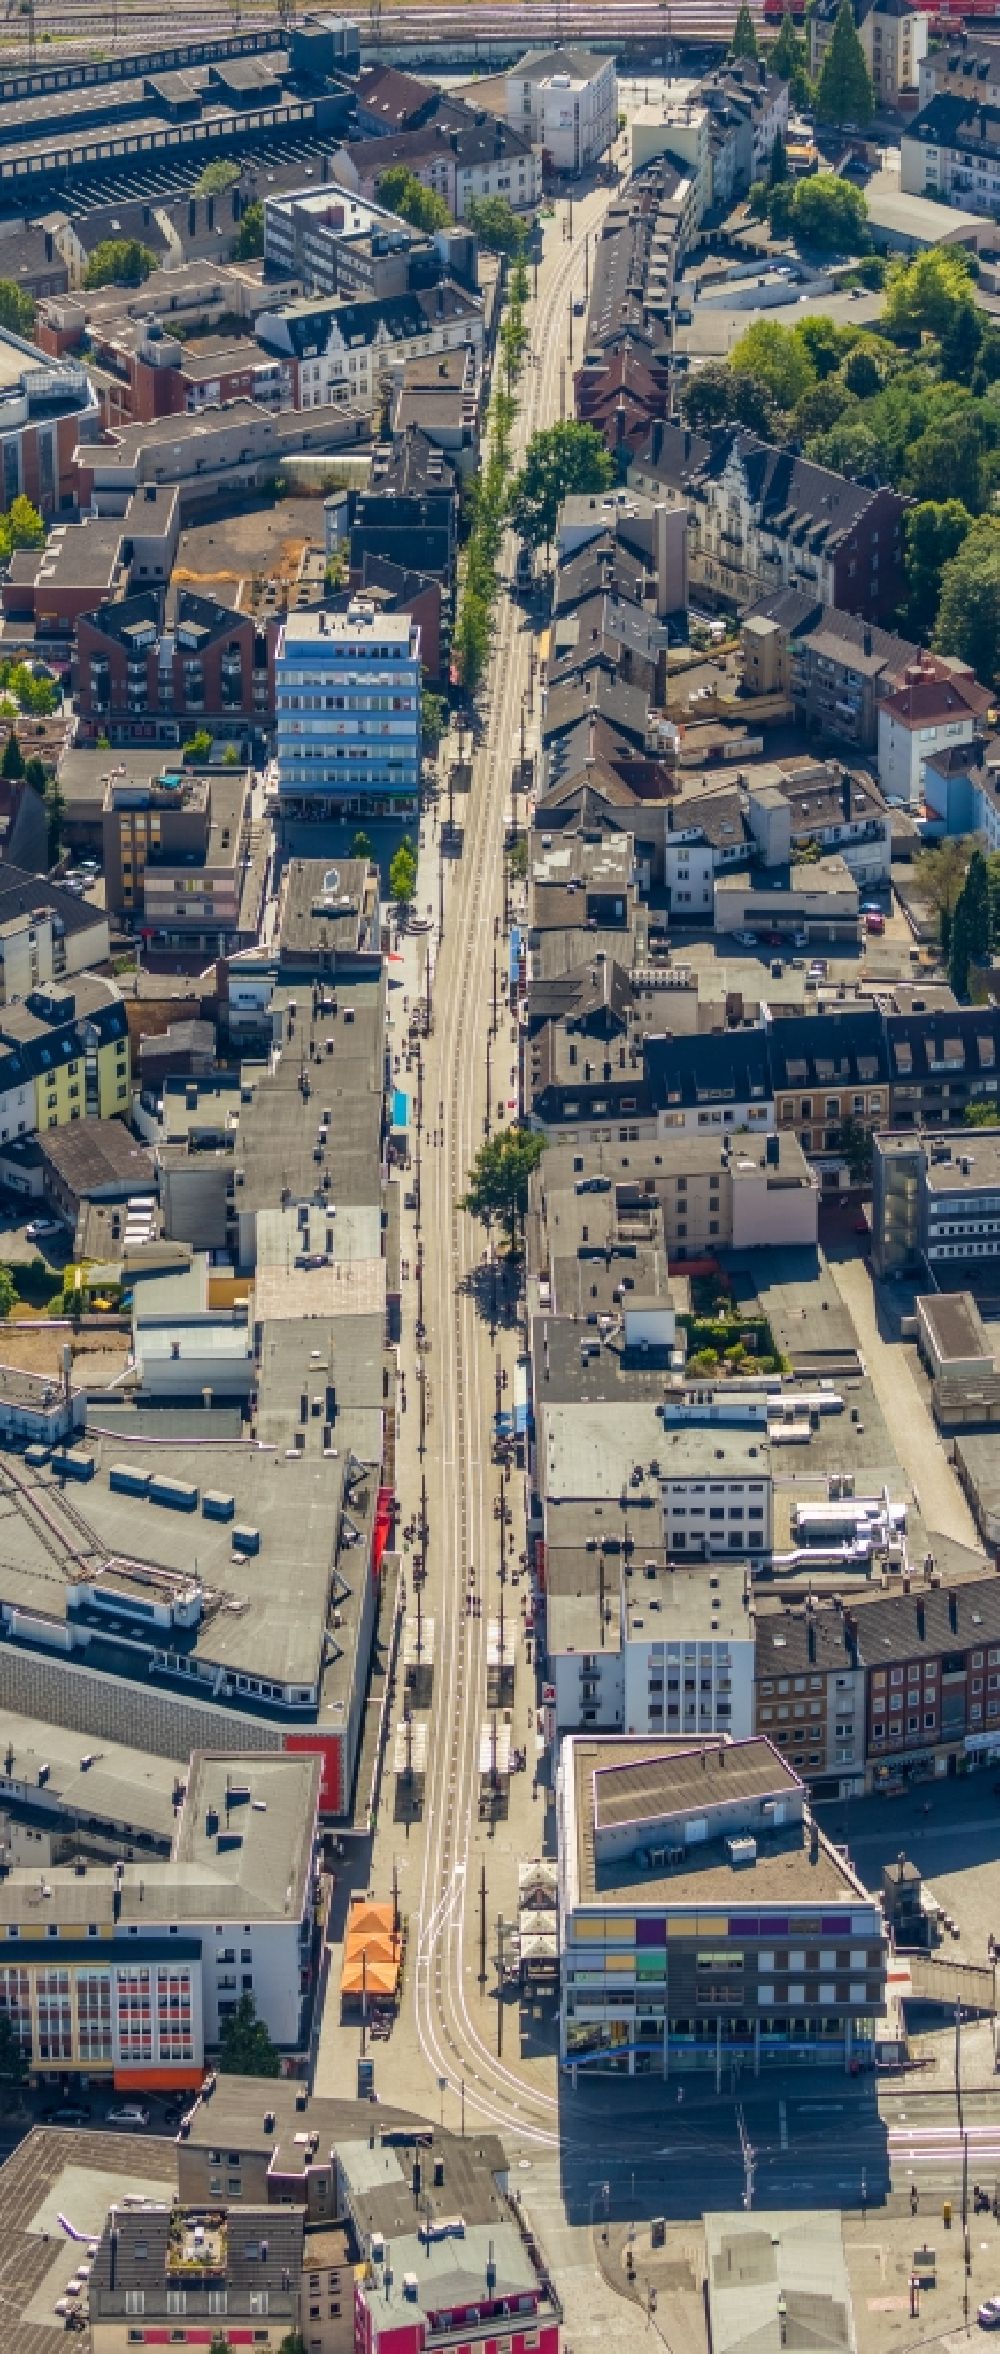 Luftbild Witten - Straßenführung der bekannten Flaniermeile und Einkaufsstraße Bahnhofstraße in Witten im Bundesland Nordrhein-Westfalen, Deutschland